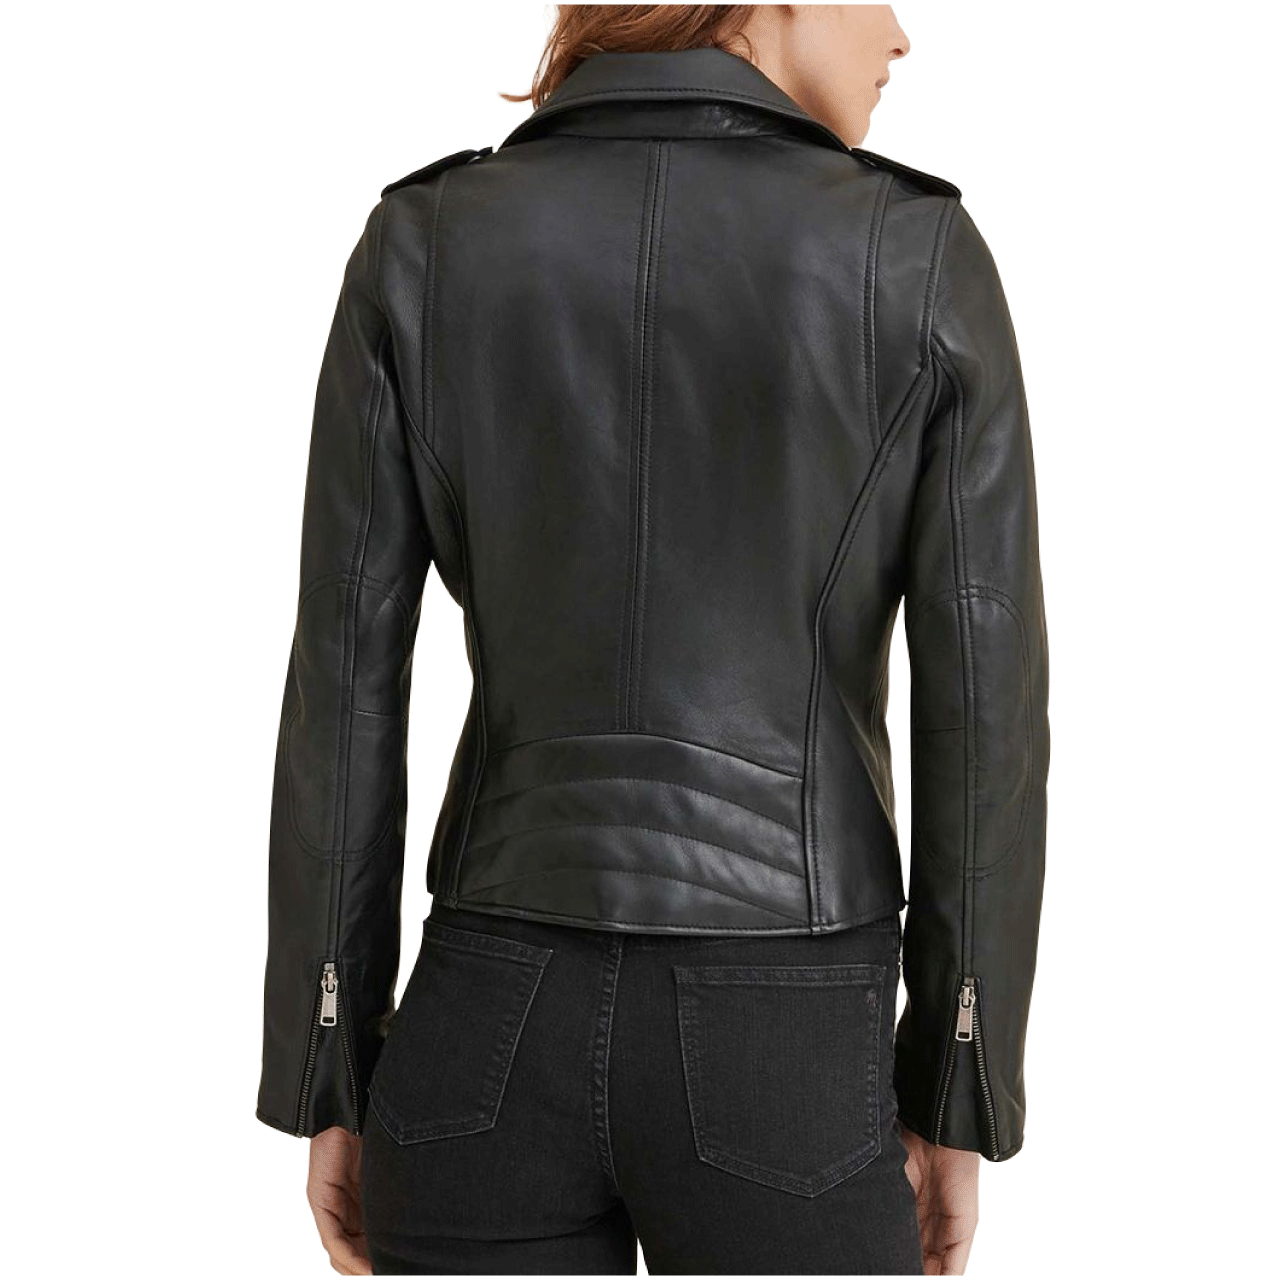 Casual Black Biker Motorcycle Sheepskin Leather Jacket Women